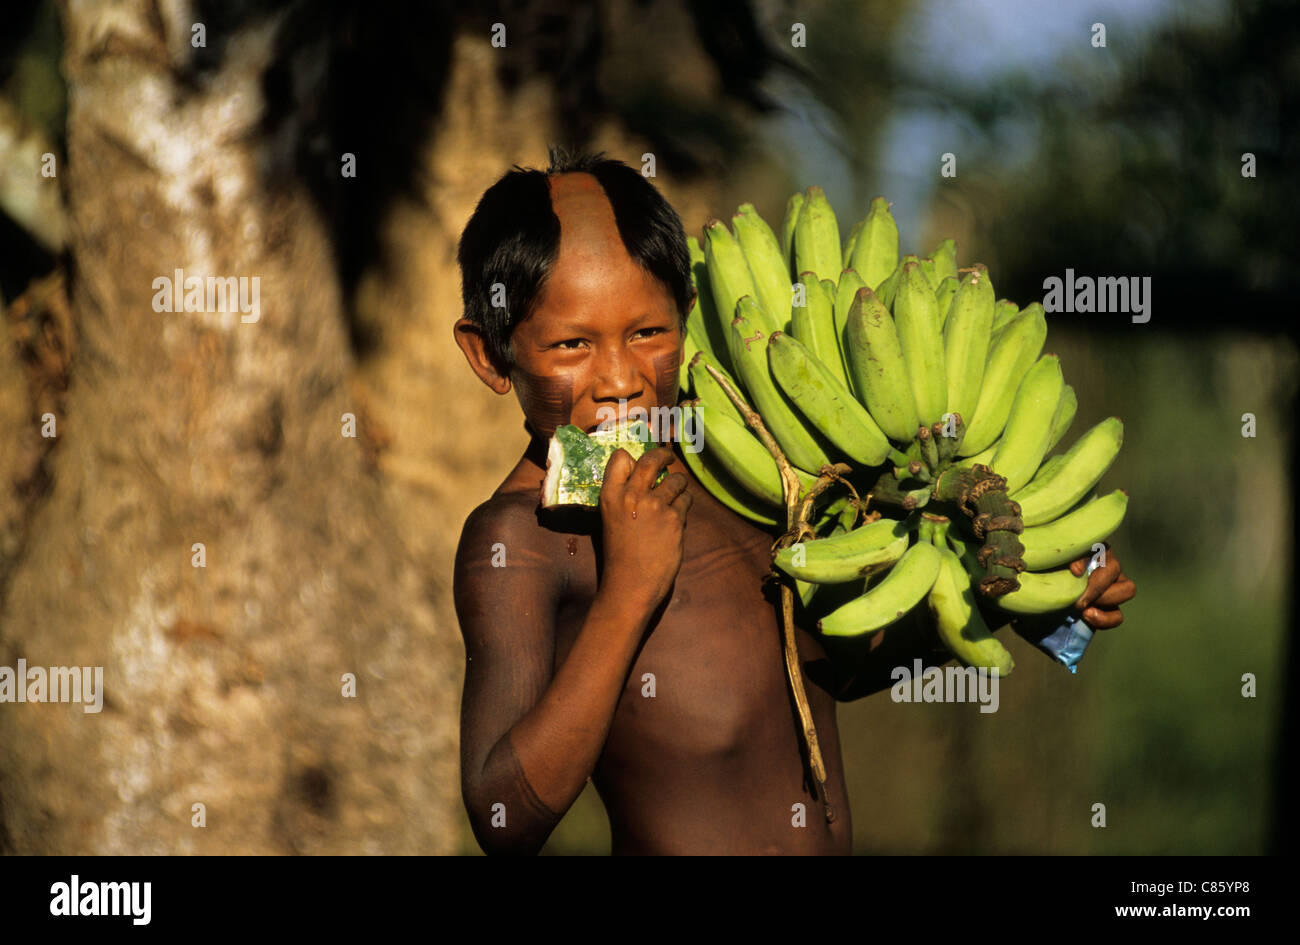 Bacaja Dorf, Brasilien. Indischer Junge hält ein Bündel Bananen und Wassermelonen zu essen; Xicrin Indianerstamm, Amazon. Stockfoto